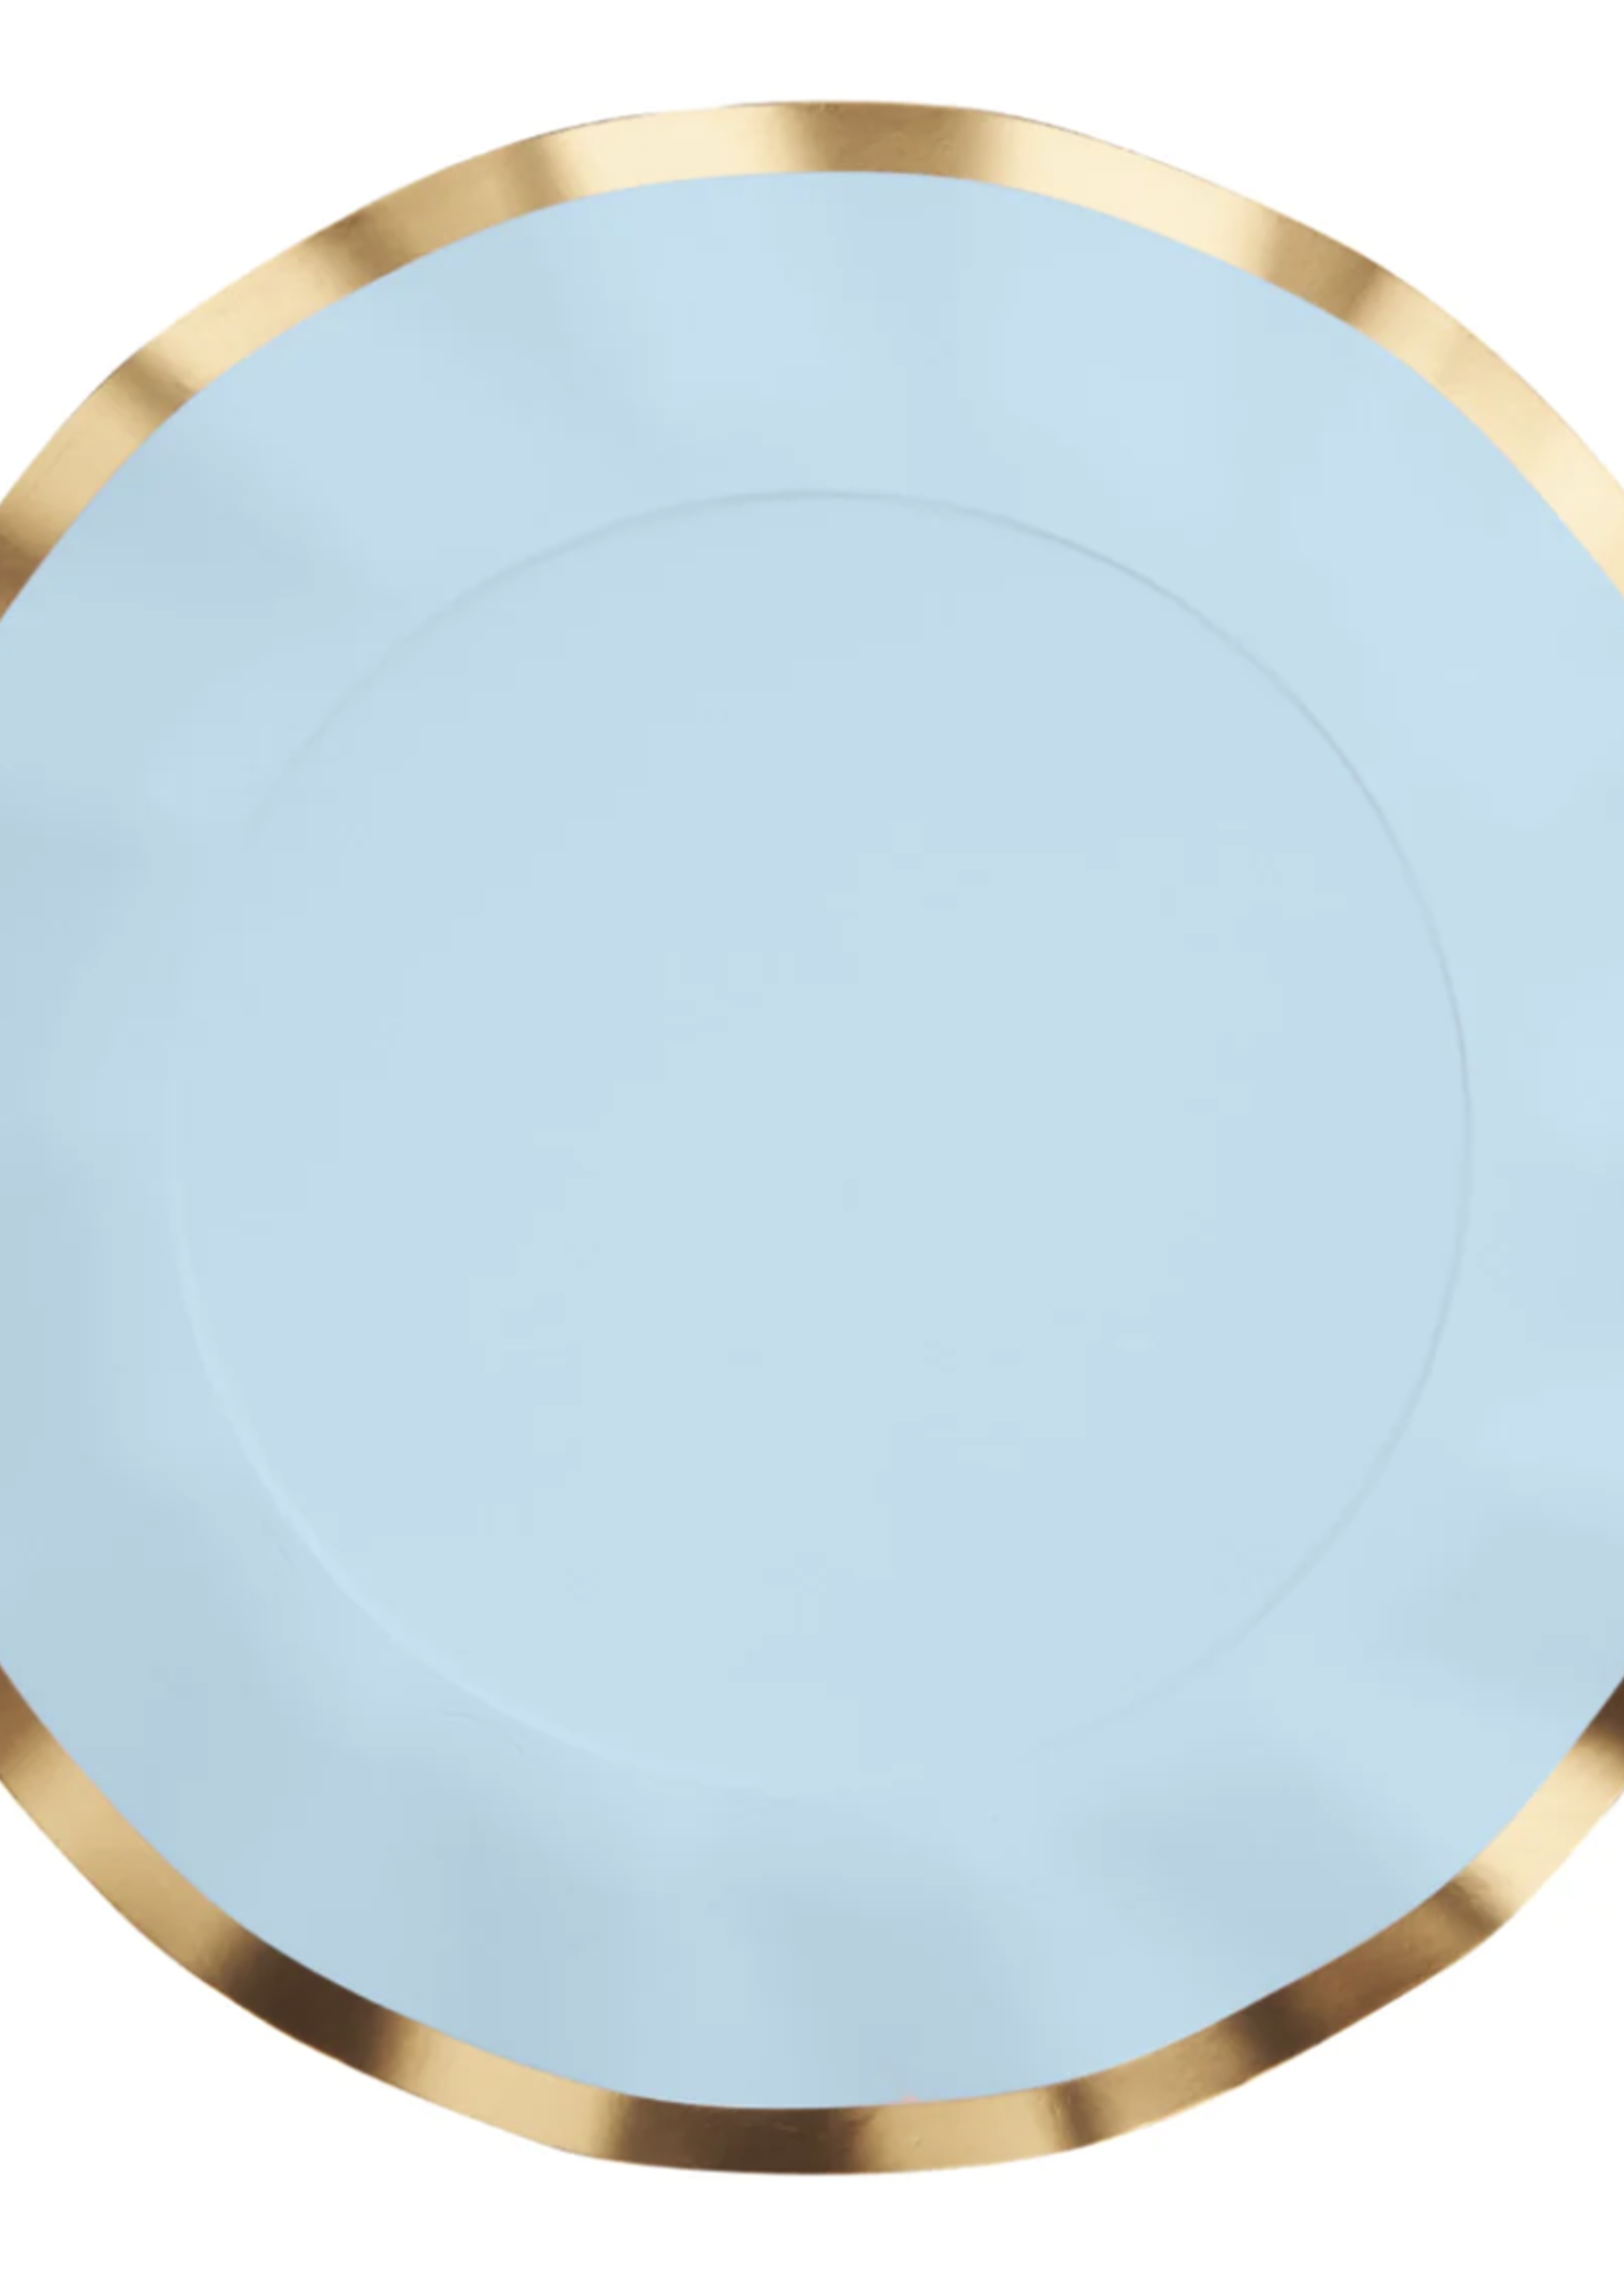 Sophistiplate Wavy Dinner Plate Everyday Sky Blue - 8pkg